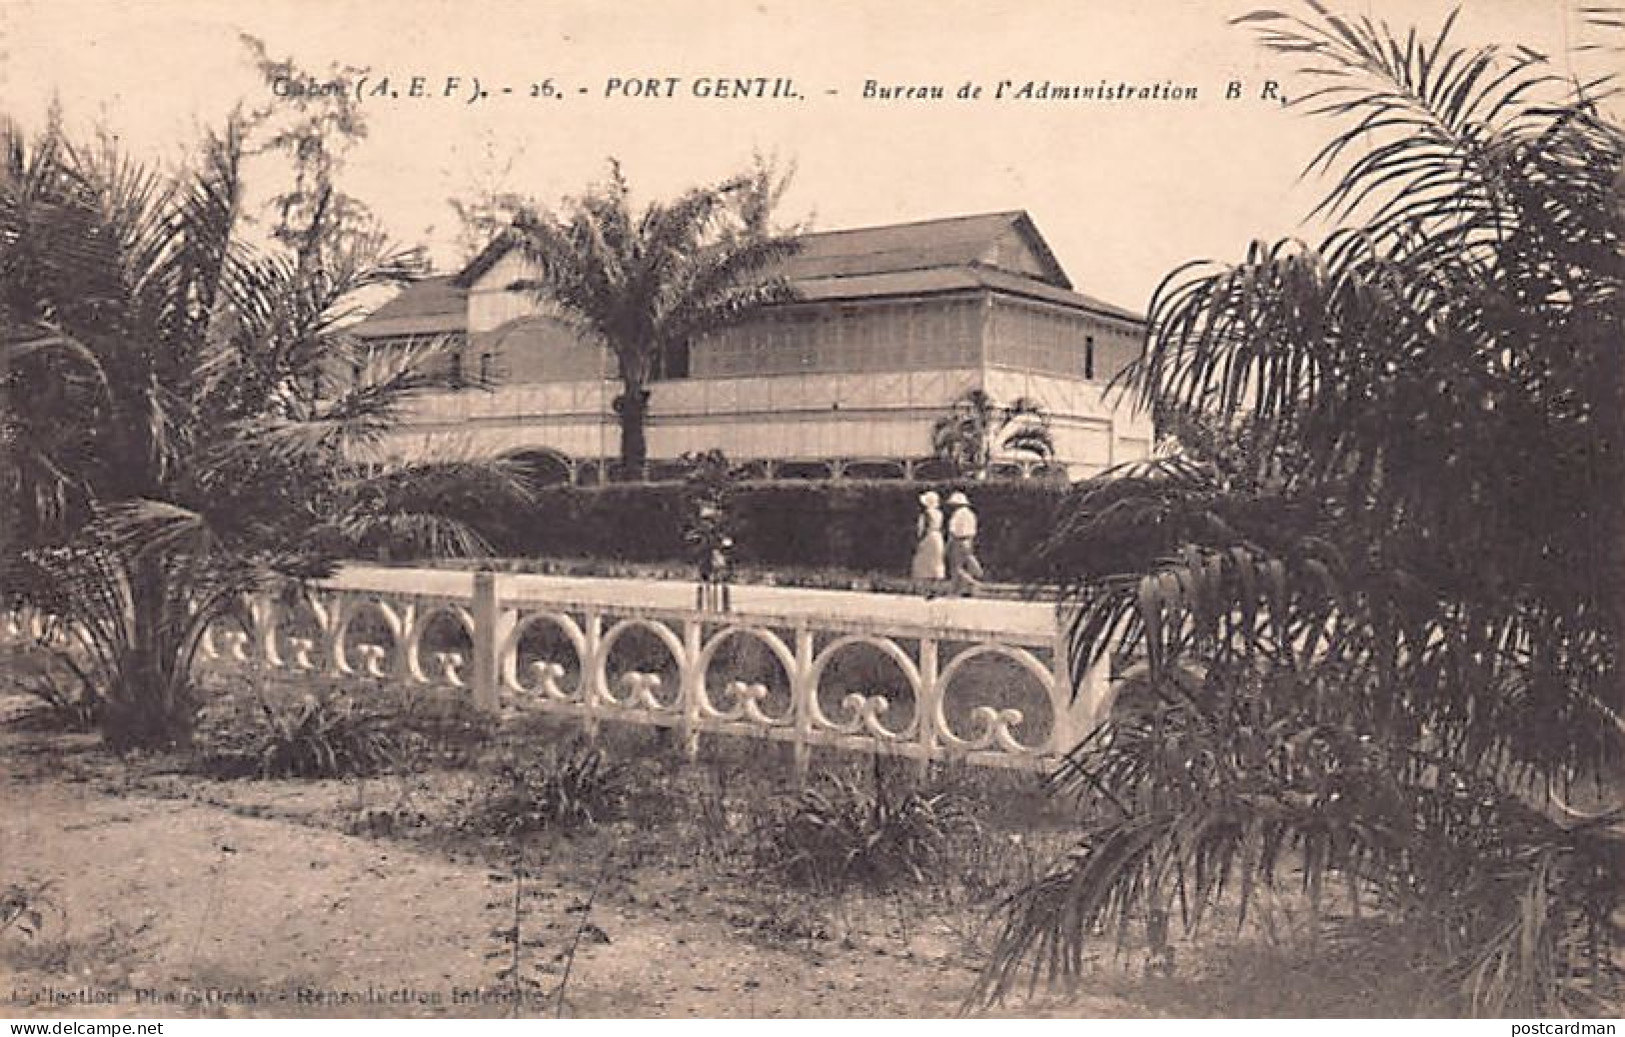 Gabon - PORT GENTIL - Bureaux De L'Admnistration - Ed. Photo-Océan 26 - Gabon